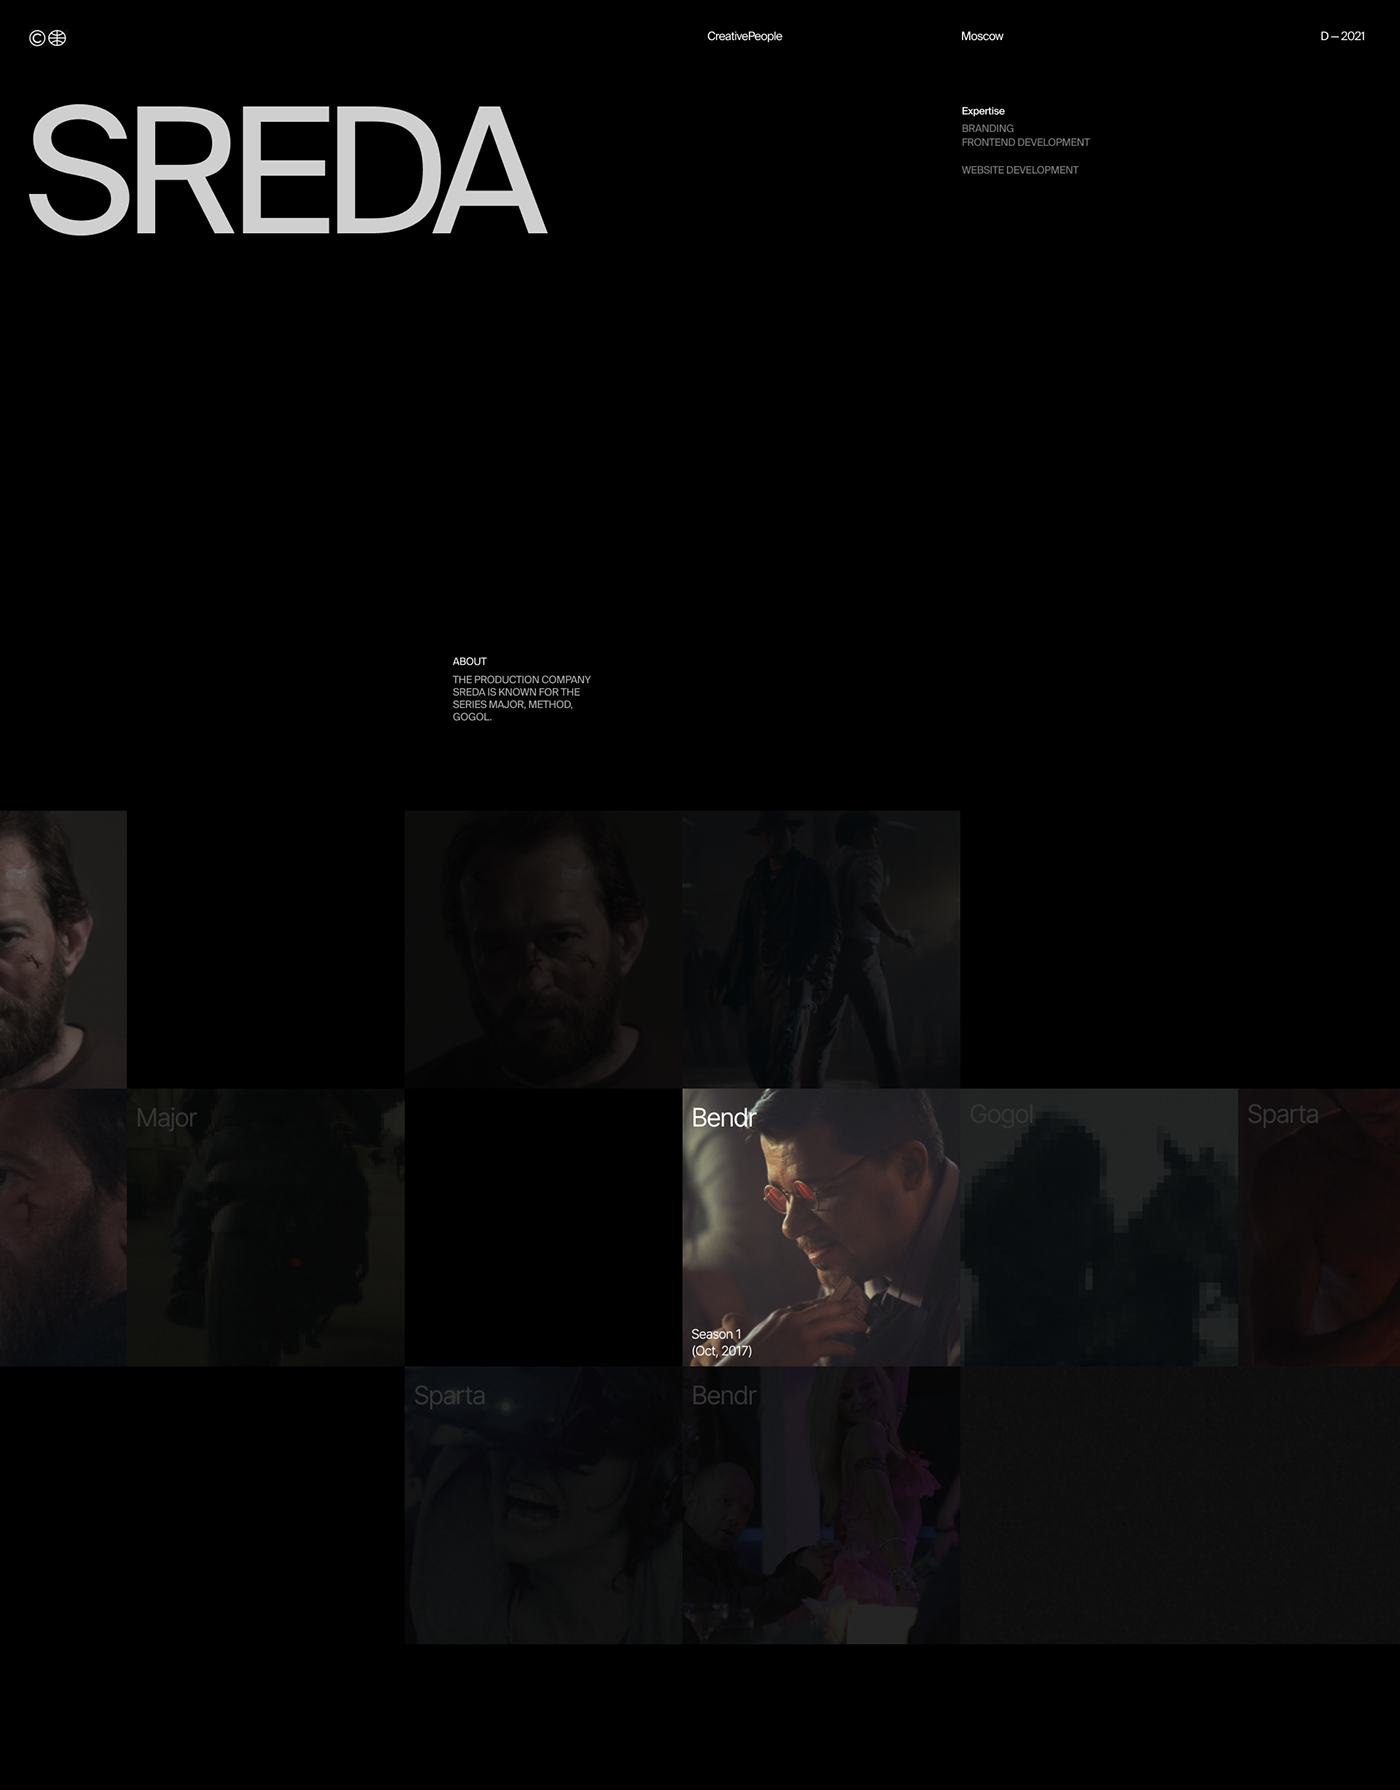 Sreda → сериалы для Netflix — Изображение №1 — Интерфейсы, Брендинг на Dprofile